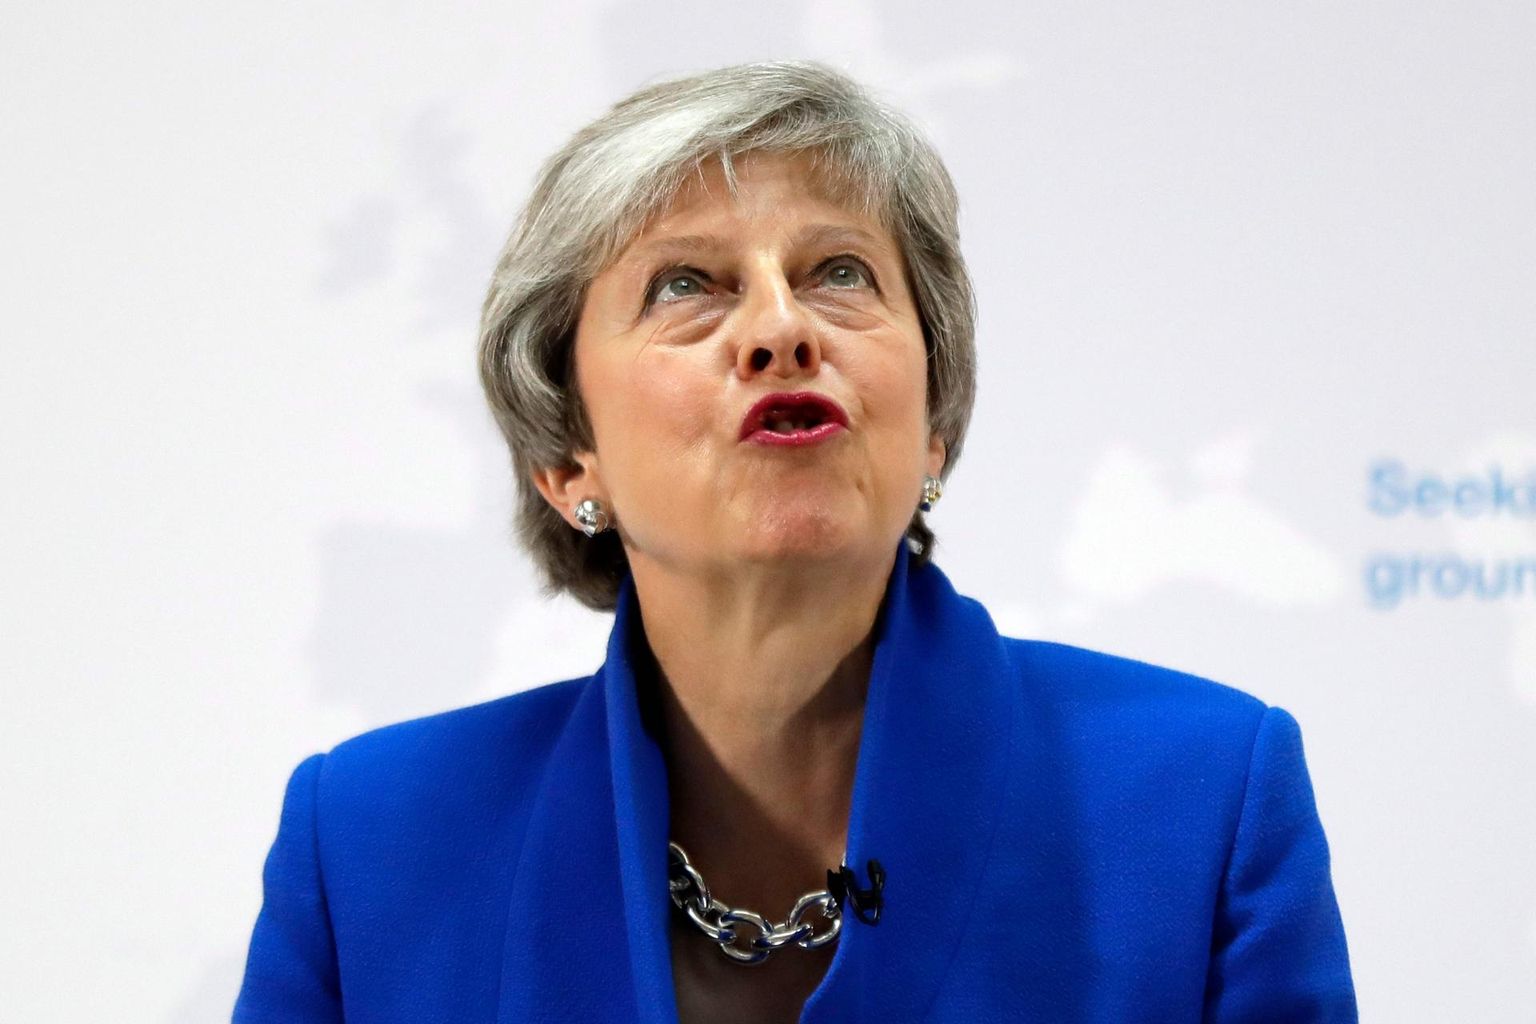 Ühendkuningriigi peaminister Theresa May üritas parlamenti ühtsele rajale suunata, kuid ei ole seni endiselt riiki ummikust välja viinud. 